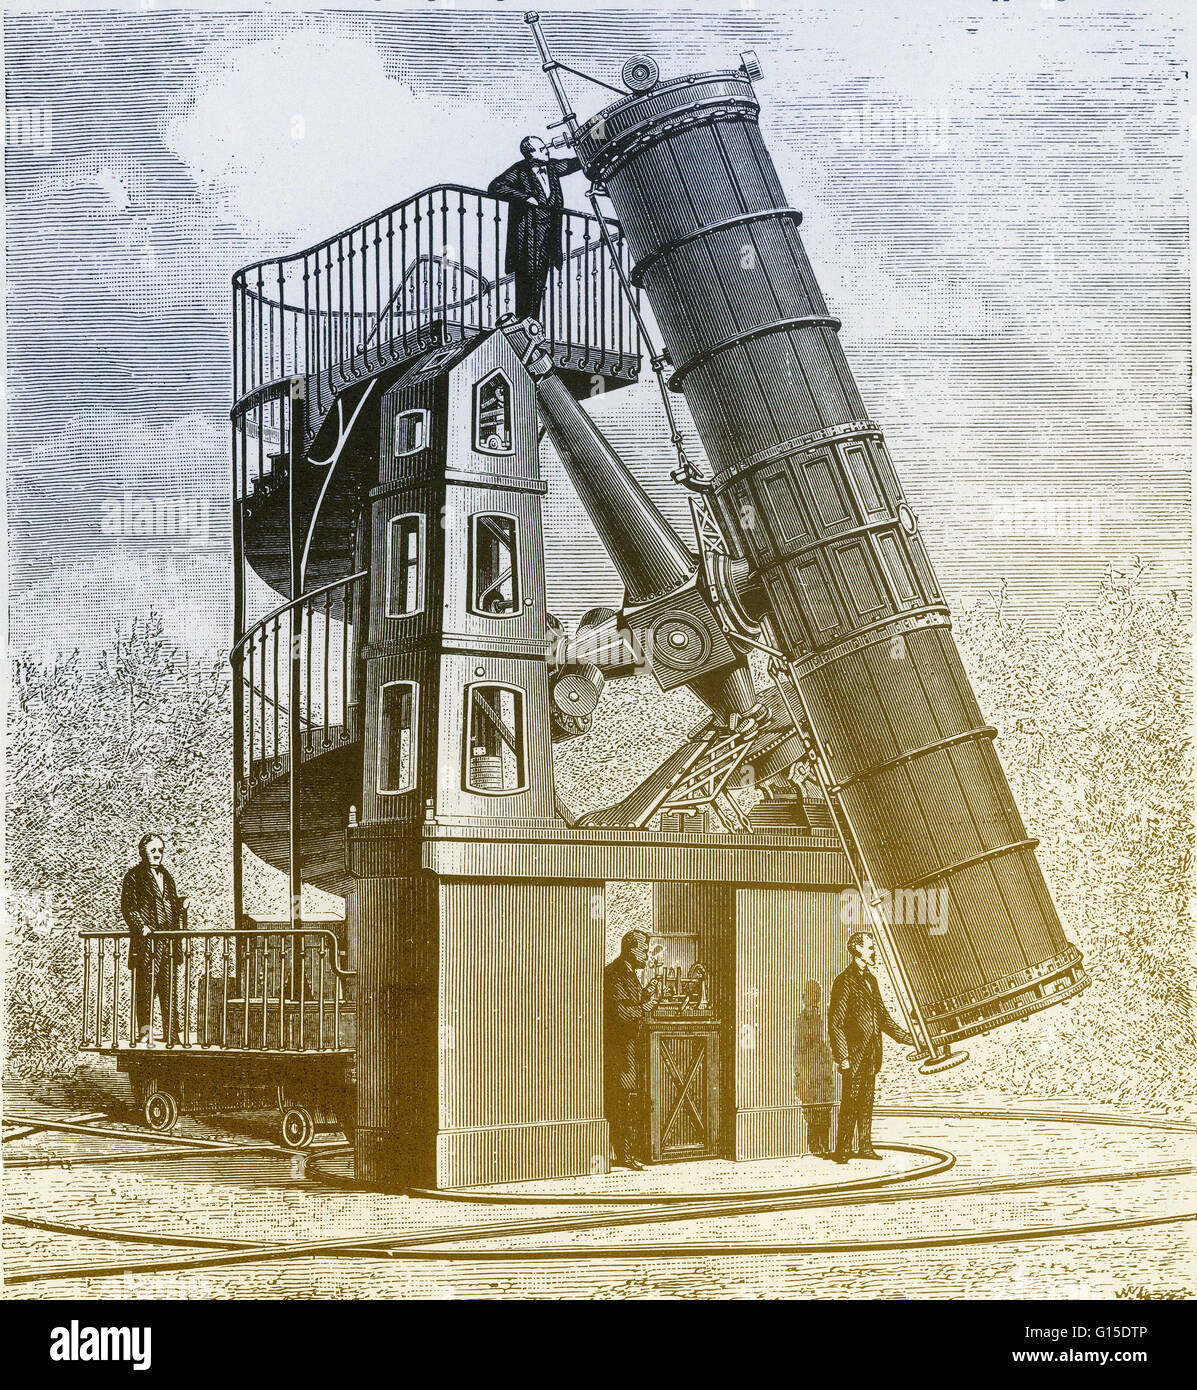 Télescope de Paris. Télescope de Newton, installé à l'Observatoire de Paris, France, pendant les années 1860. Il avait un 1.2 mètre (48 pouces) de diamètre miroir. C'était le premier grand télescope miroir pour être fait de verre d'argent chimique déposé Banque D'Images